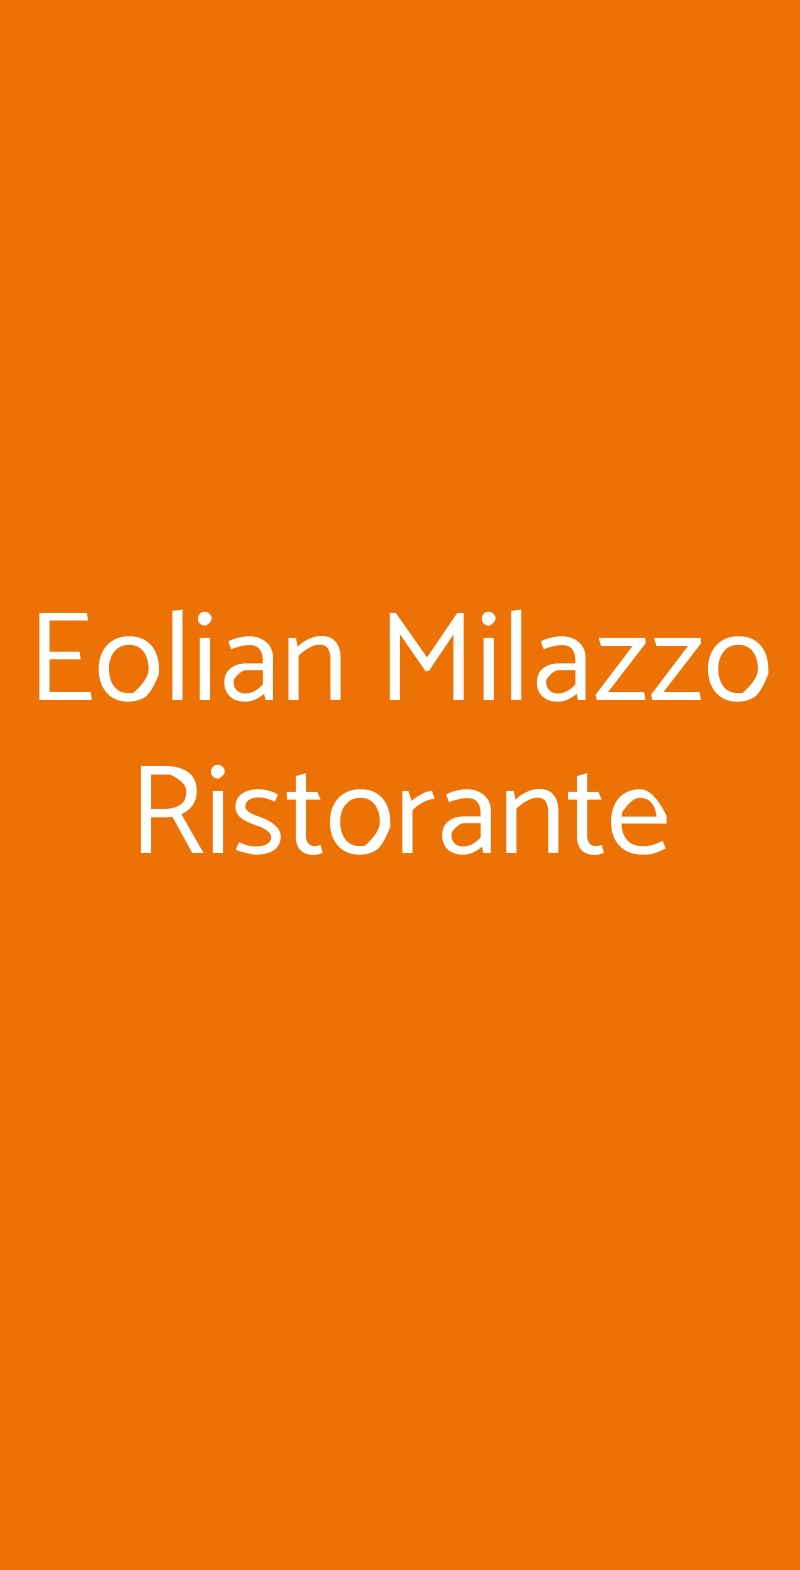 Eolian Milazzo Ristorante Milazzo menù 1 pagina